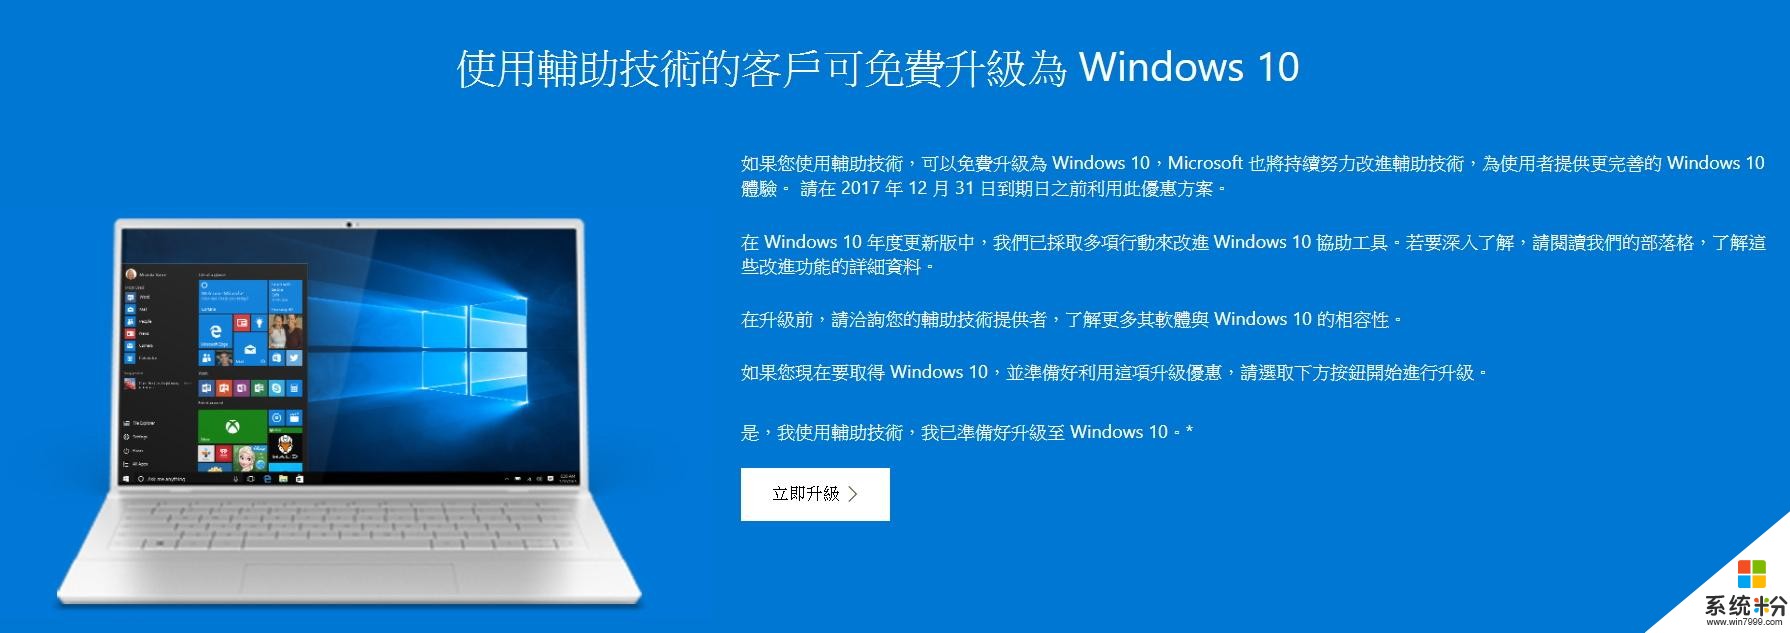 微软老用户快把握! Windows 10「免费升级」管道年底正式终结(2)